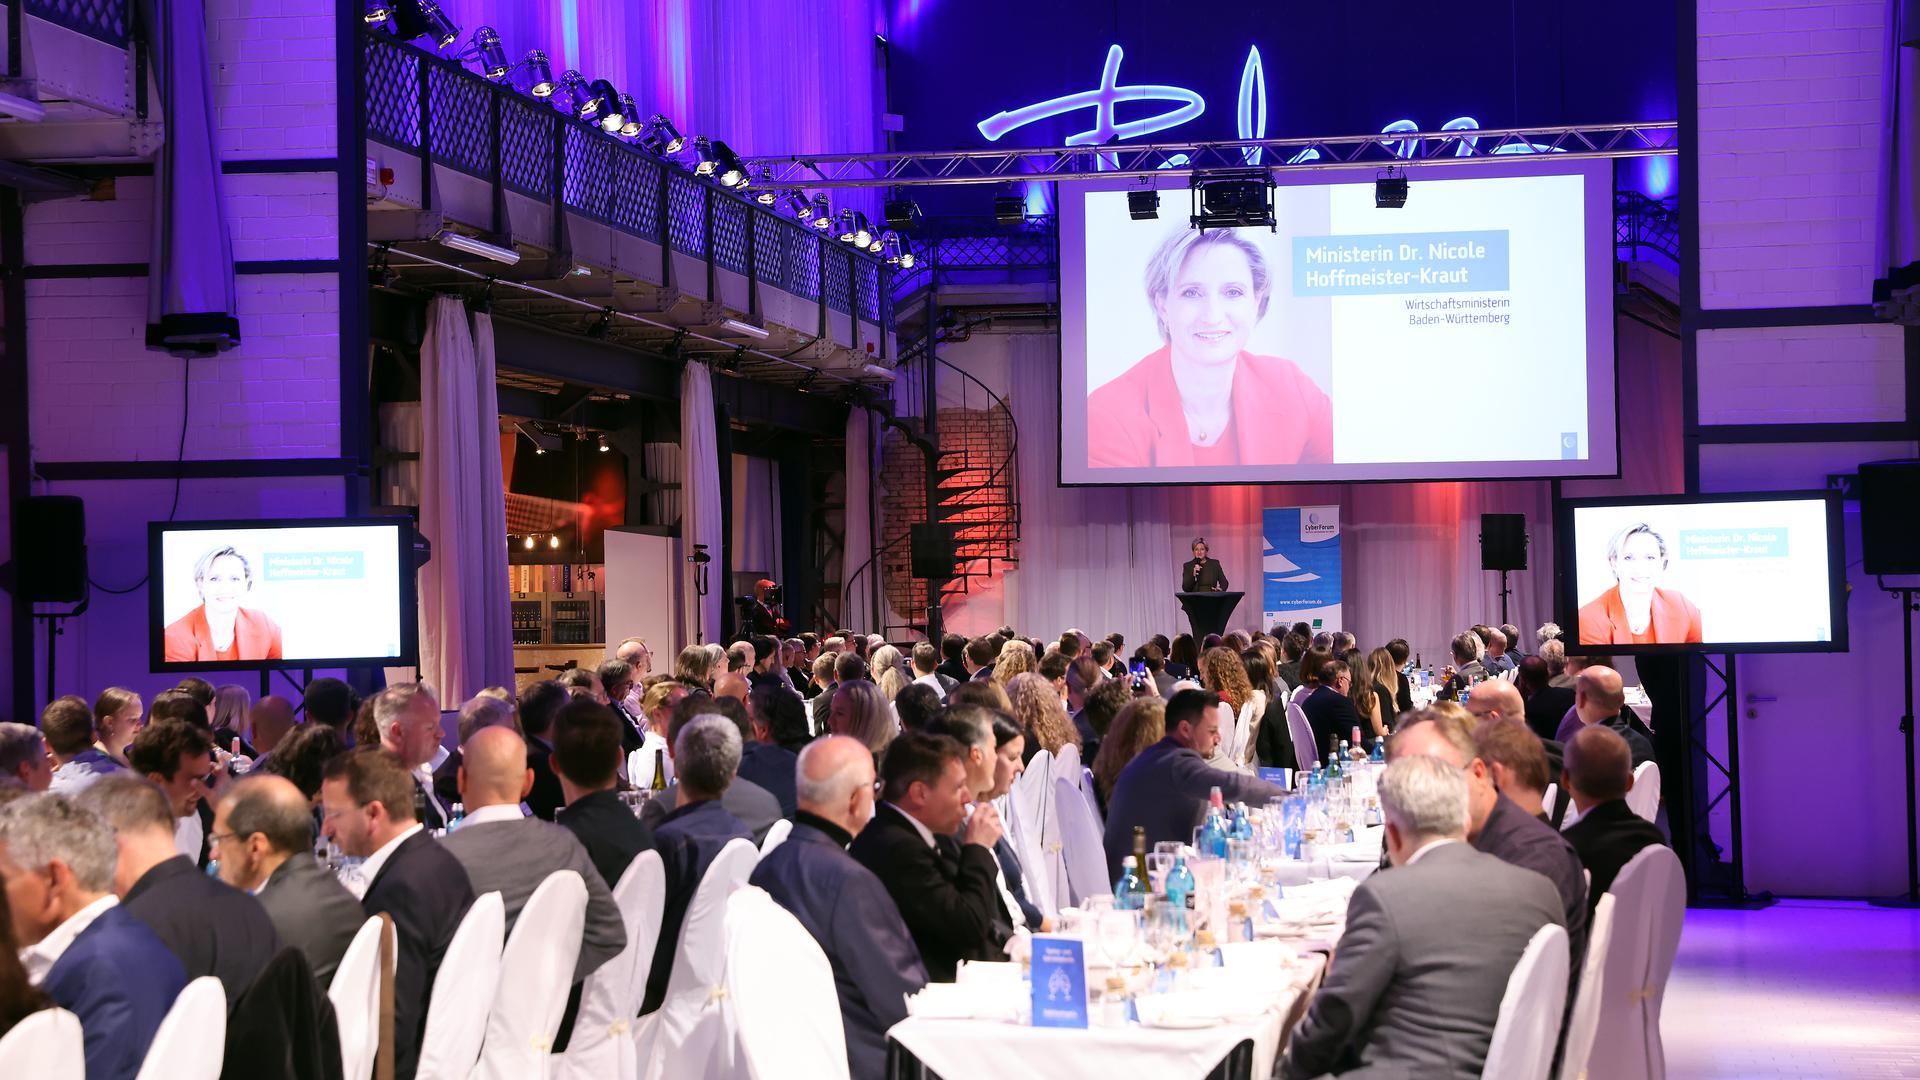 Festakt: Rund 250 Gäste feierten in der Palazzo Halle in Karlsruhe den 25. Geburtstag des Cyberforums. Unter ihnen war auch die baden-württembergische Wirtschaftsministerin Nicole Hoffmeister-Kraut.